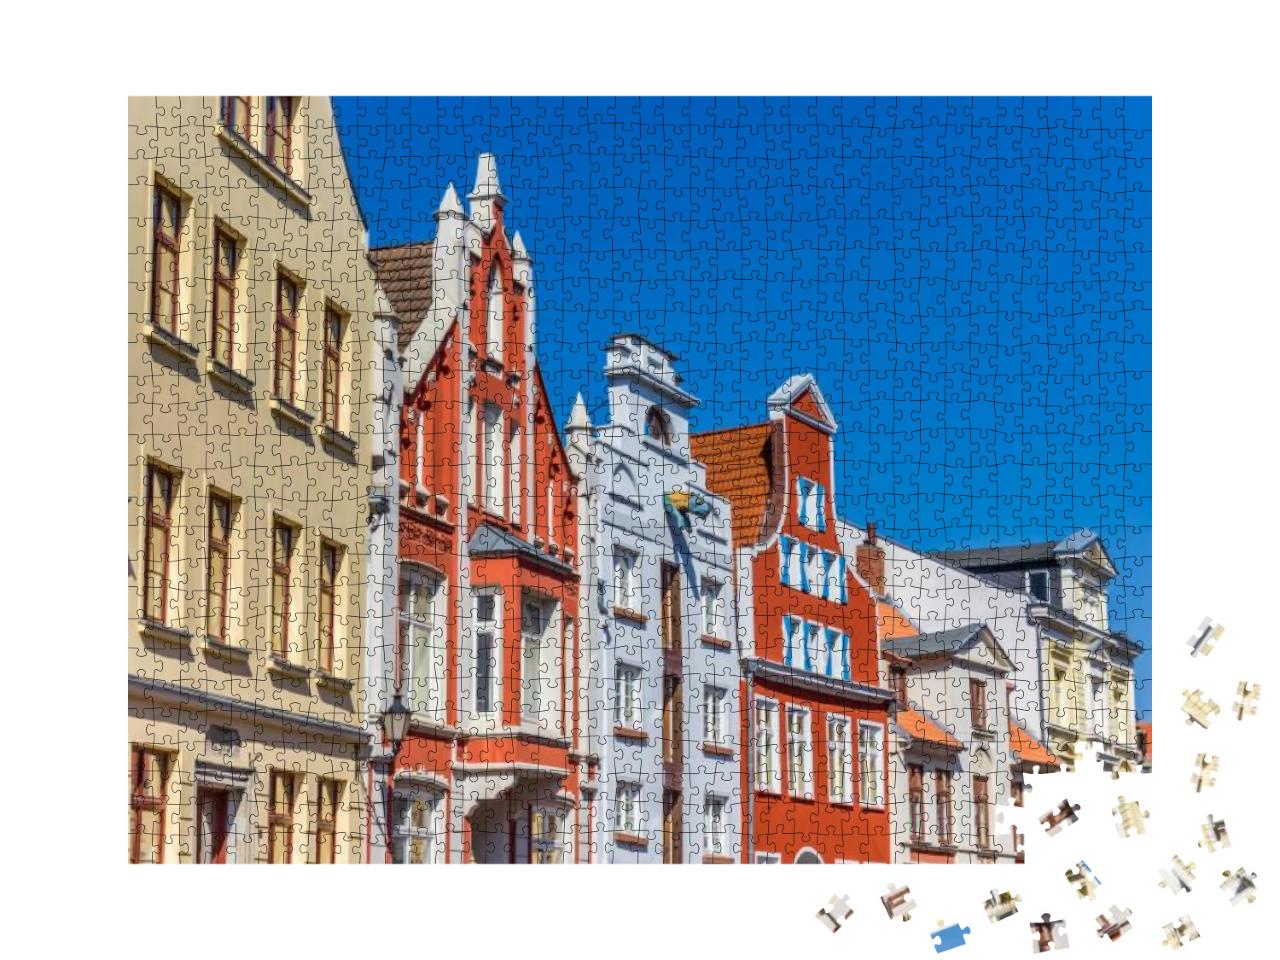 Puzzle 1000 Teile „Historische Fassaden in der Innenstadt von Wismar, Deutschland“